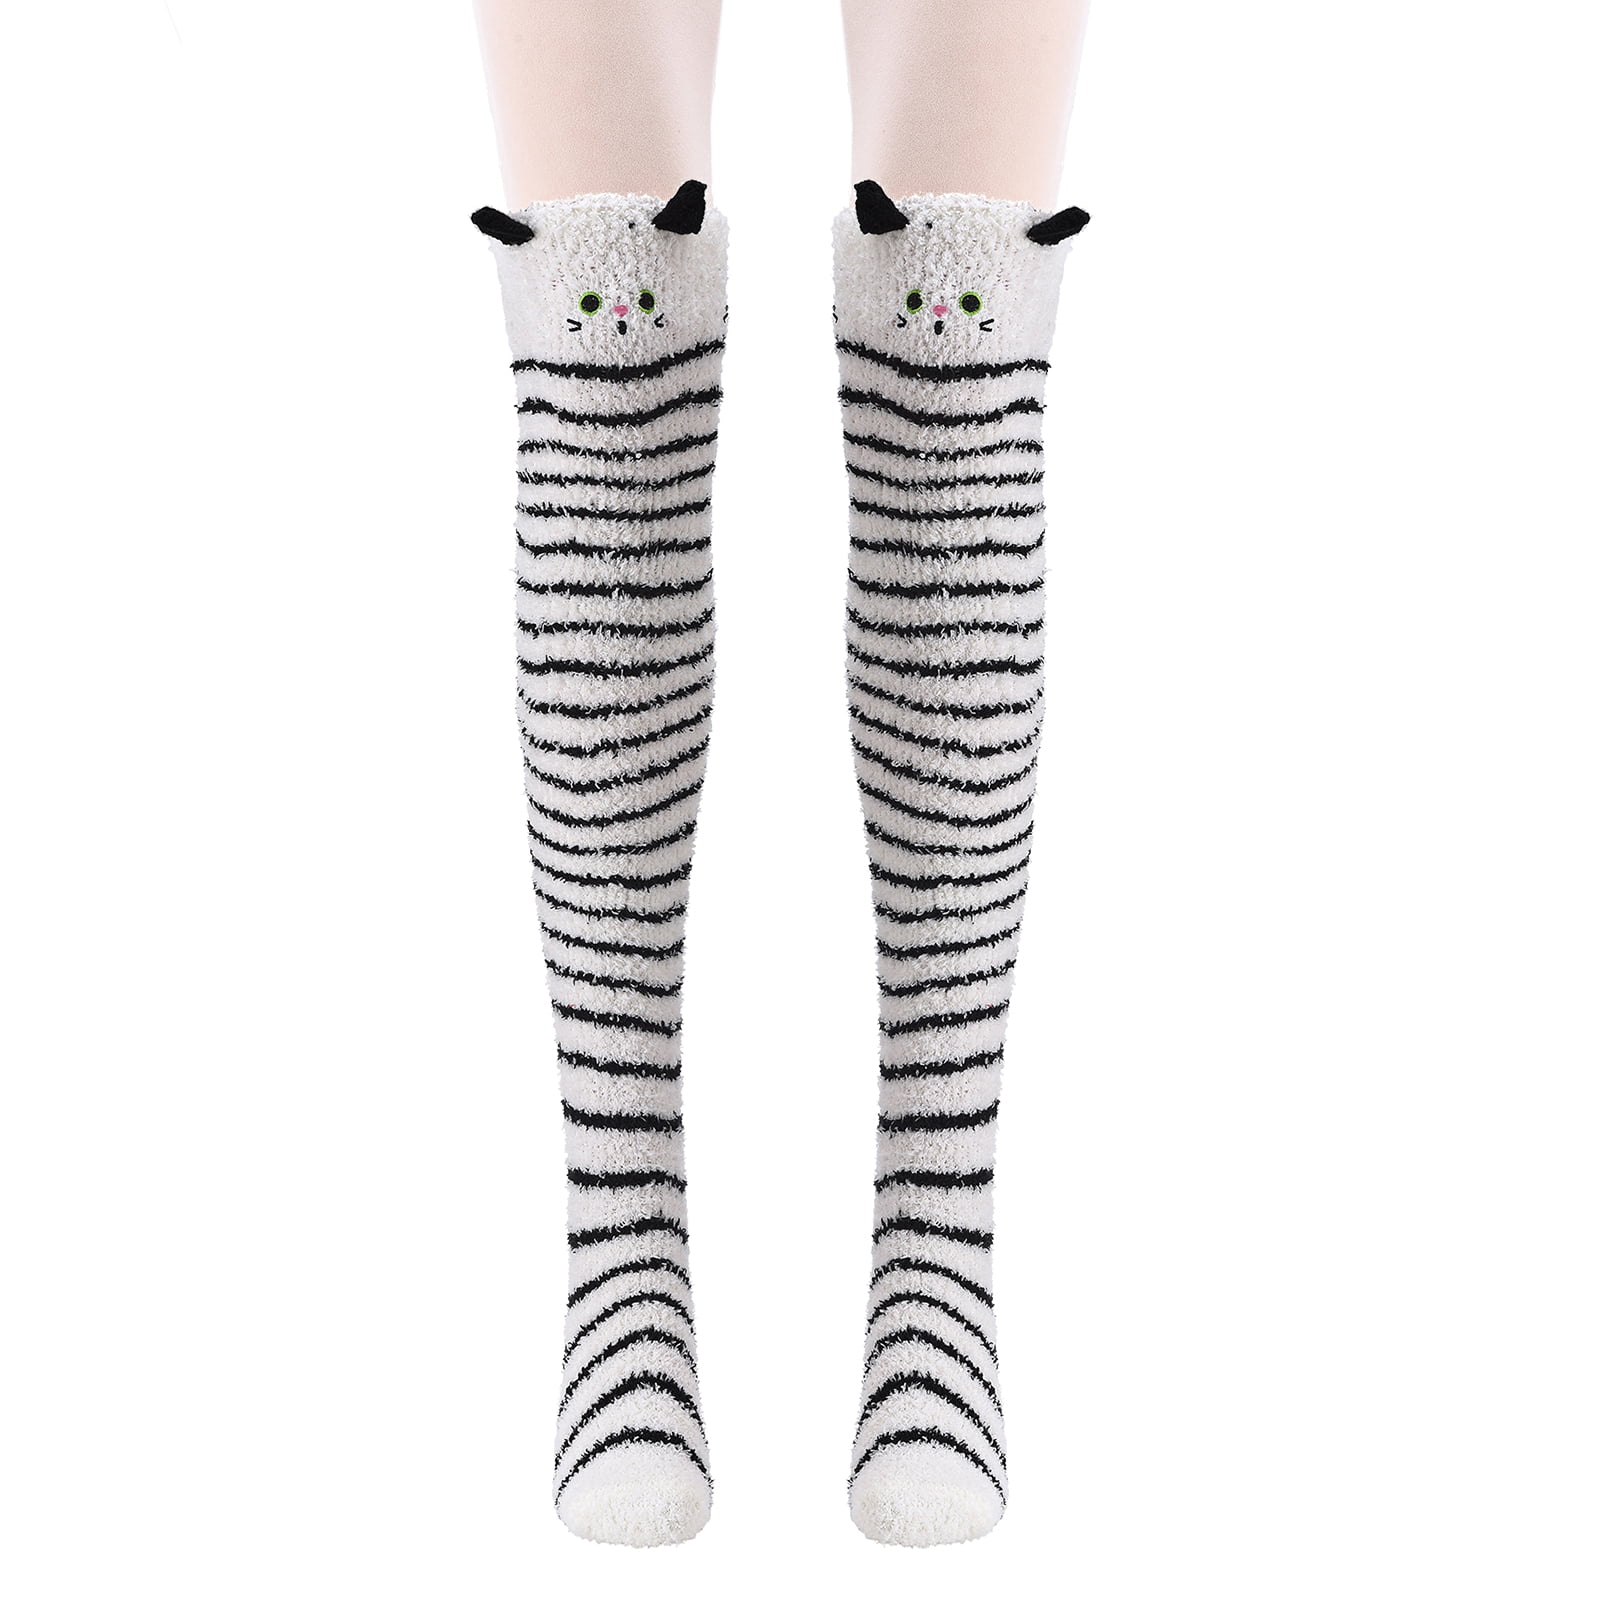 Women's Fashion Leg Warmers Long Warm 3 Buttons Boot Calf Socks for Women  and Girls Fashion White